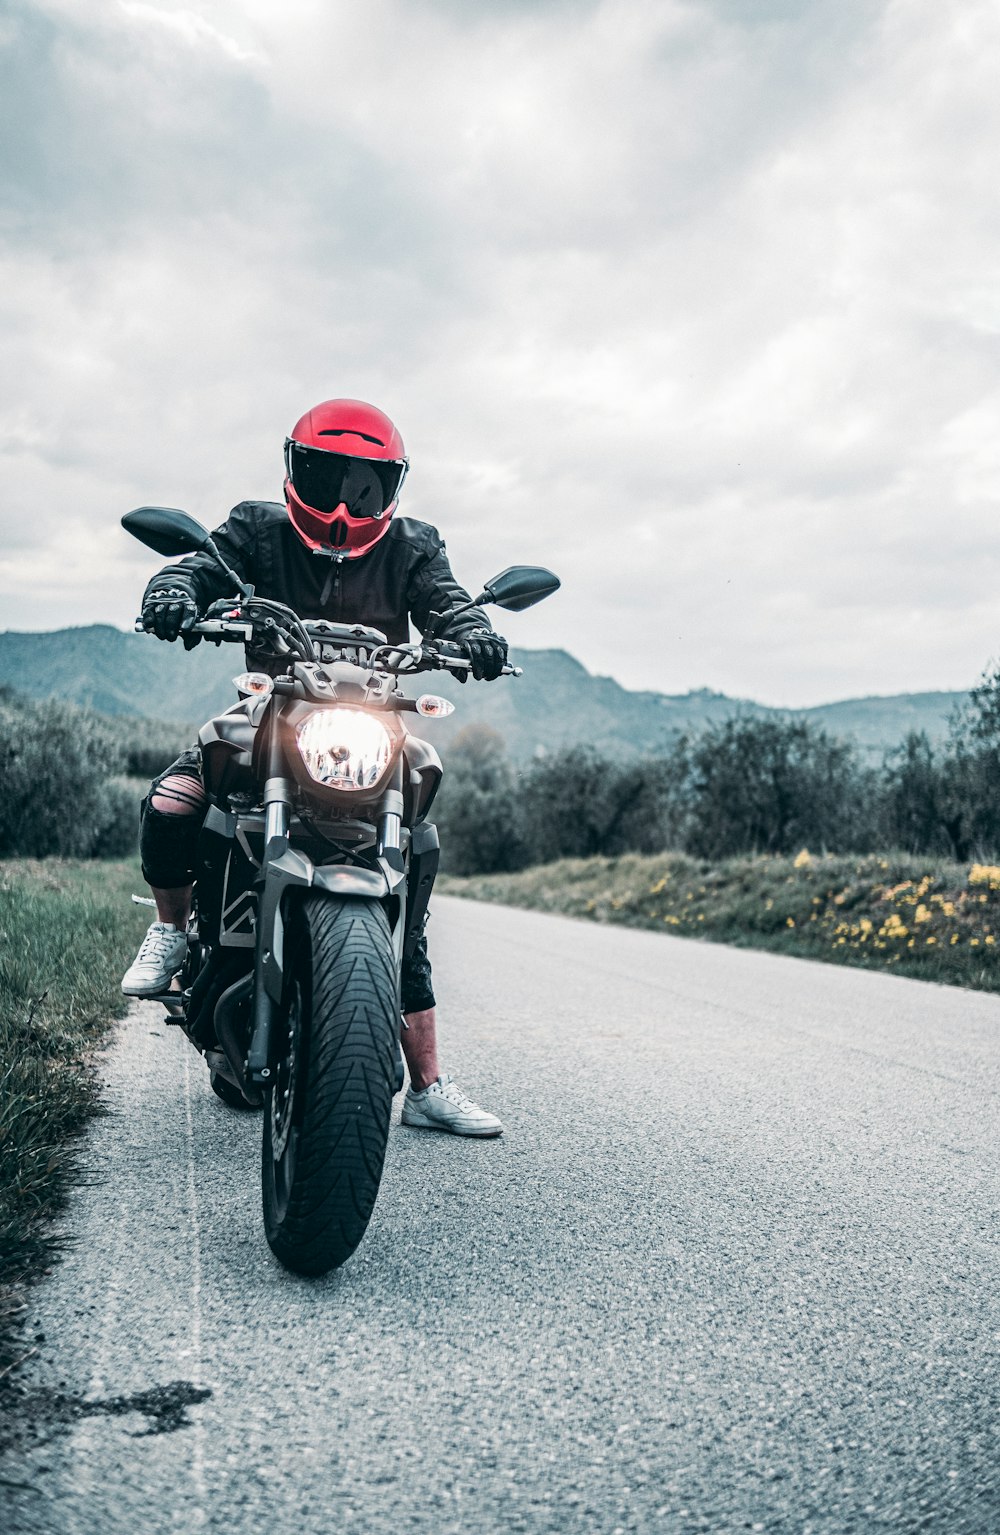 Un homme conduisant une moto sur une route sinueuse